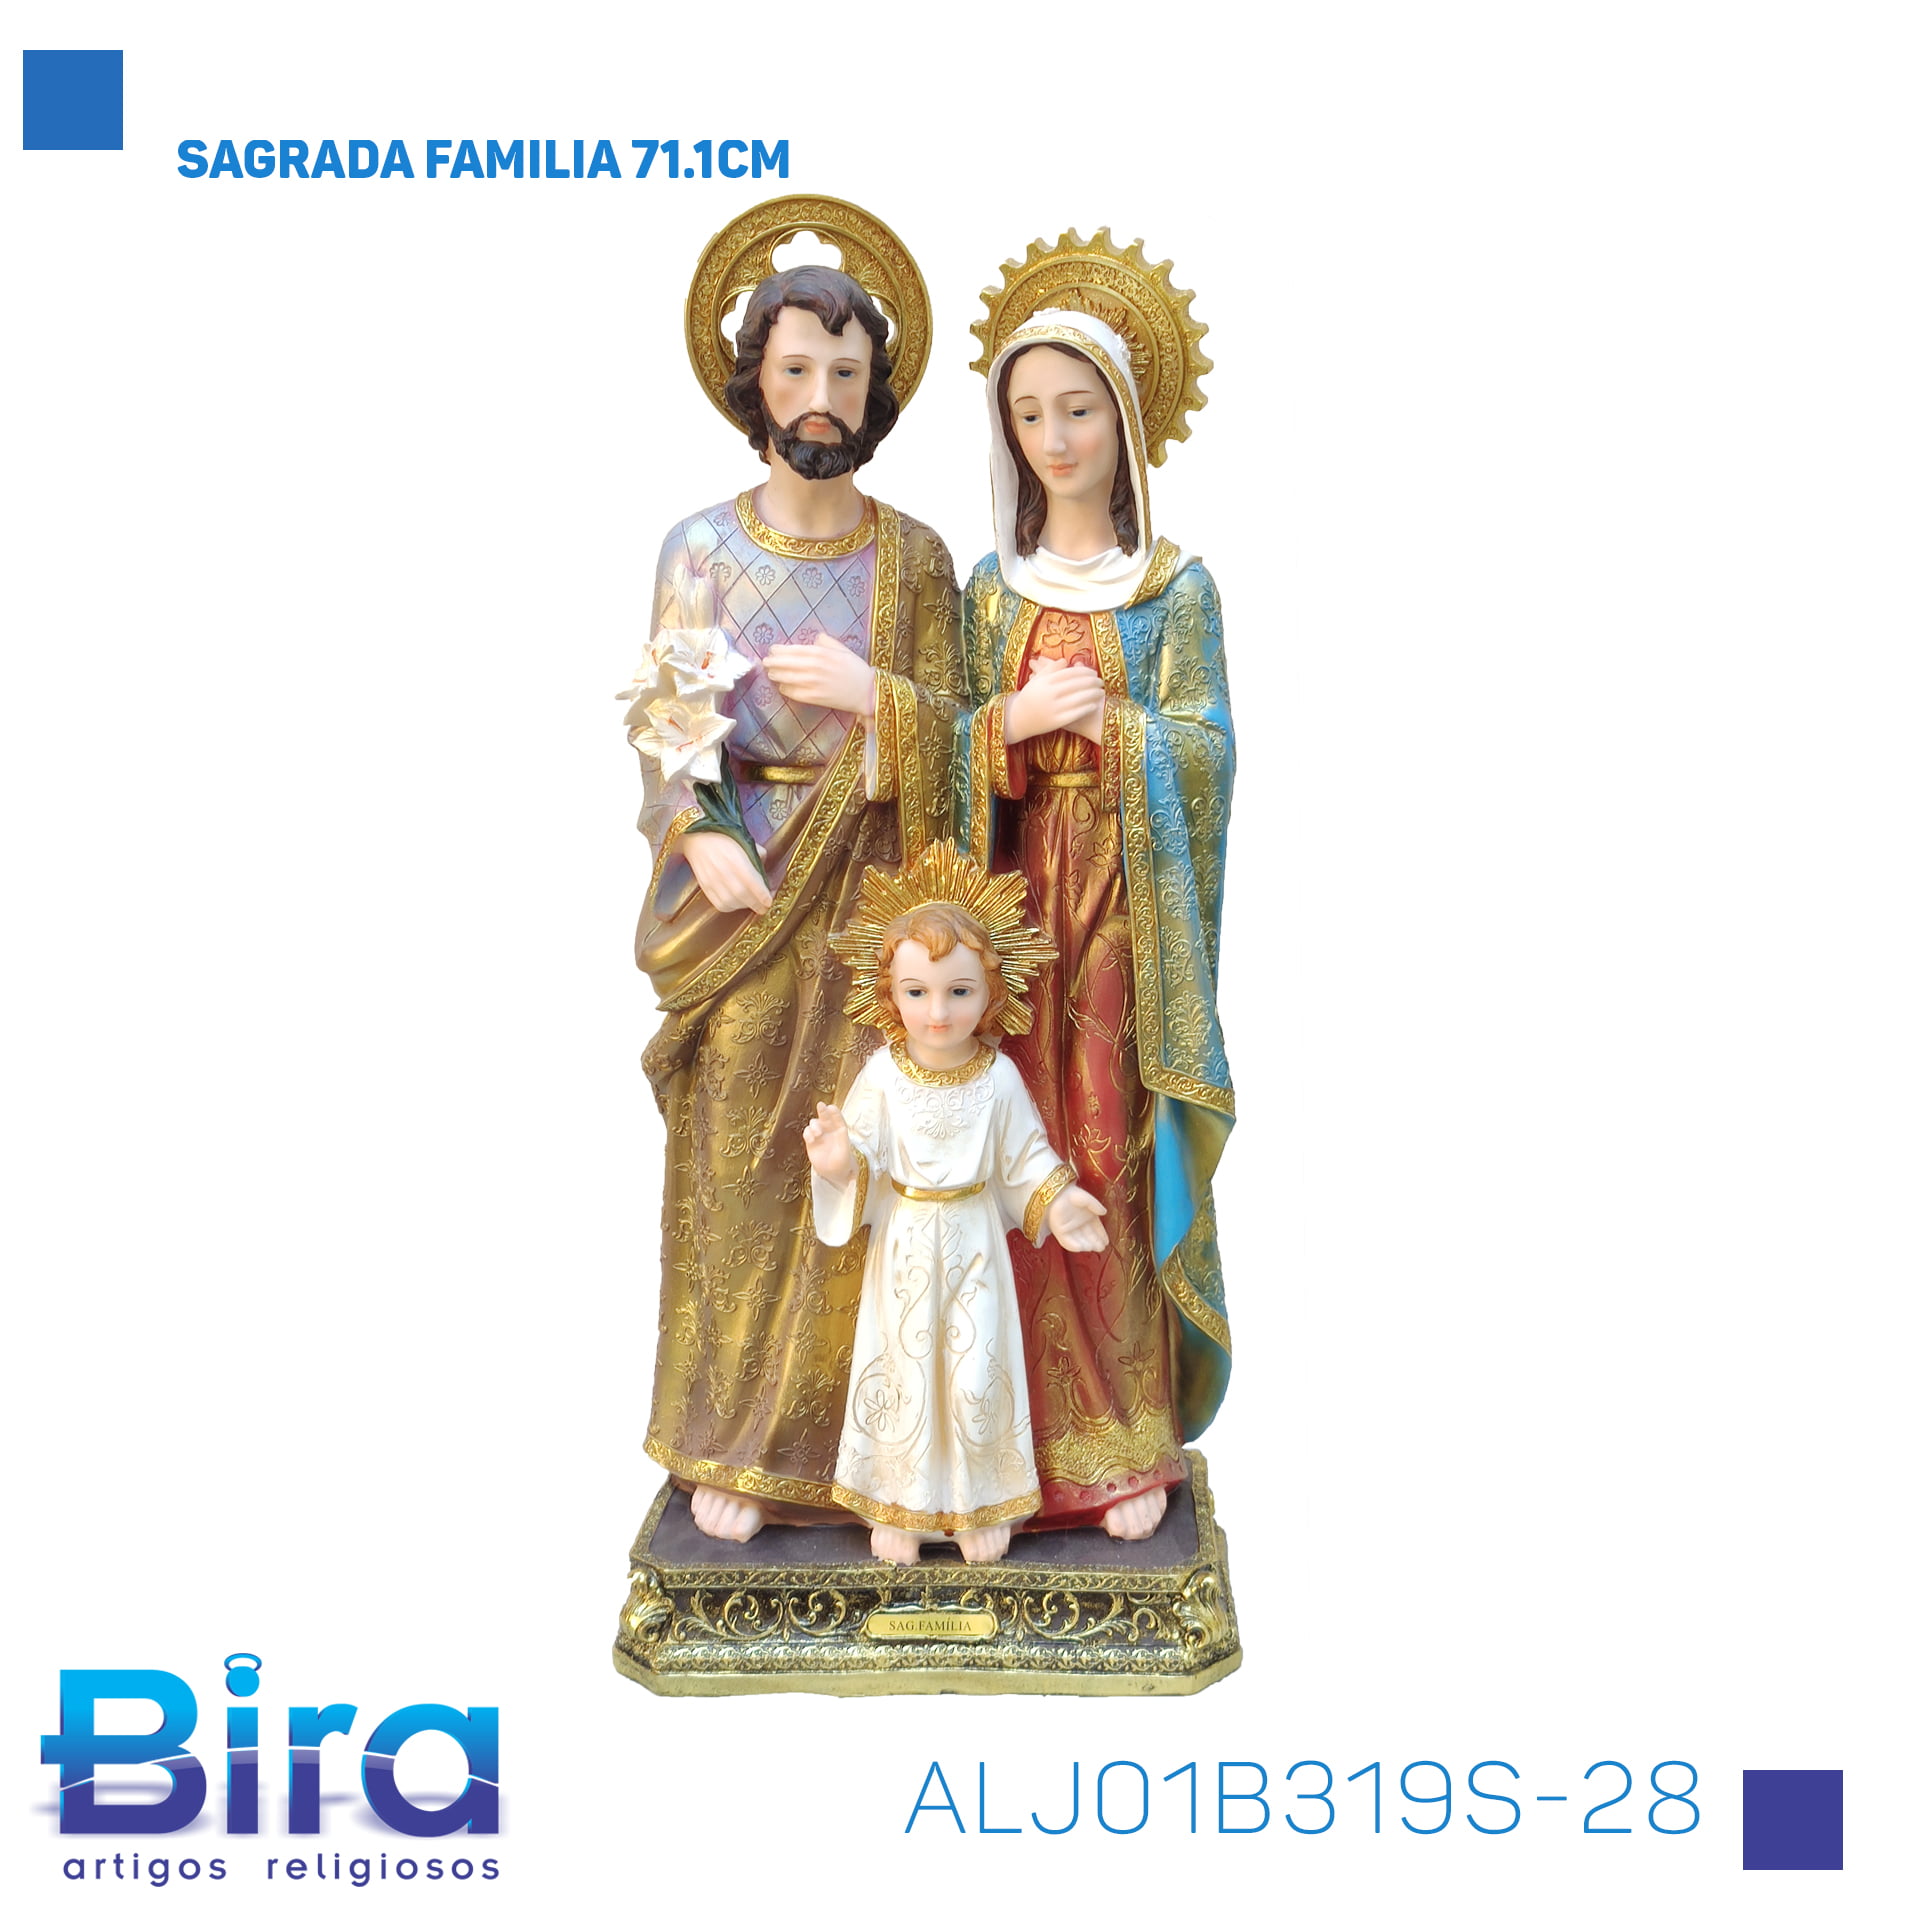 Bira Artigos Religiosos - SAGRADA FAMILIA 71.1CM Cód. ALJ01B319S-28